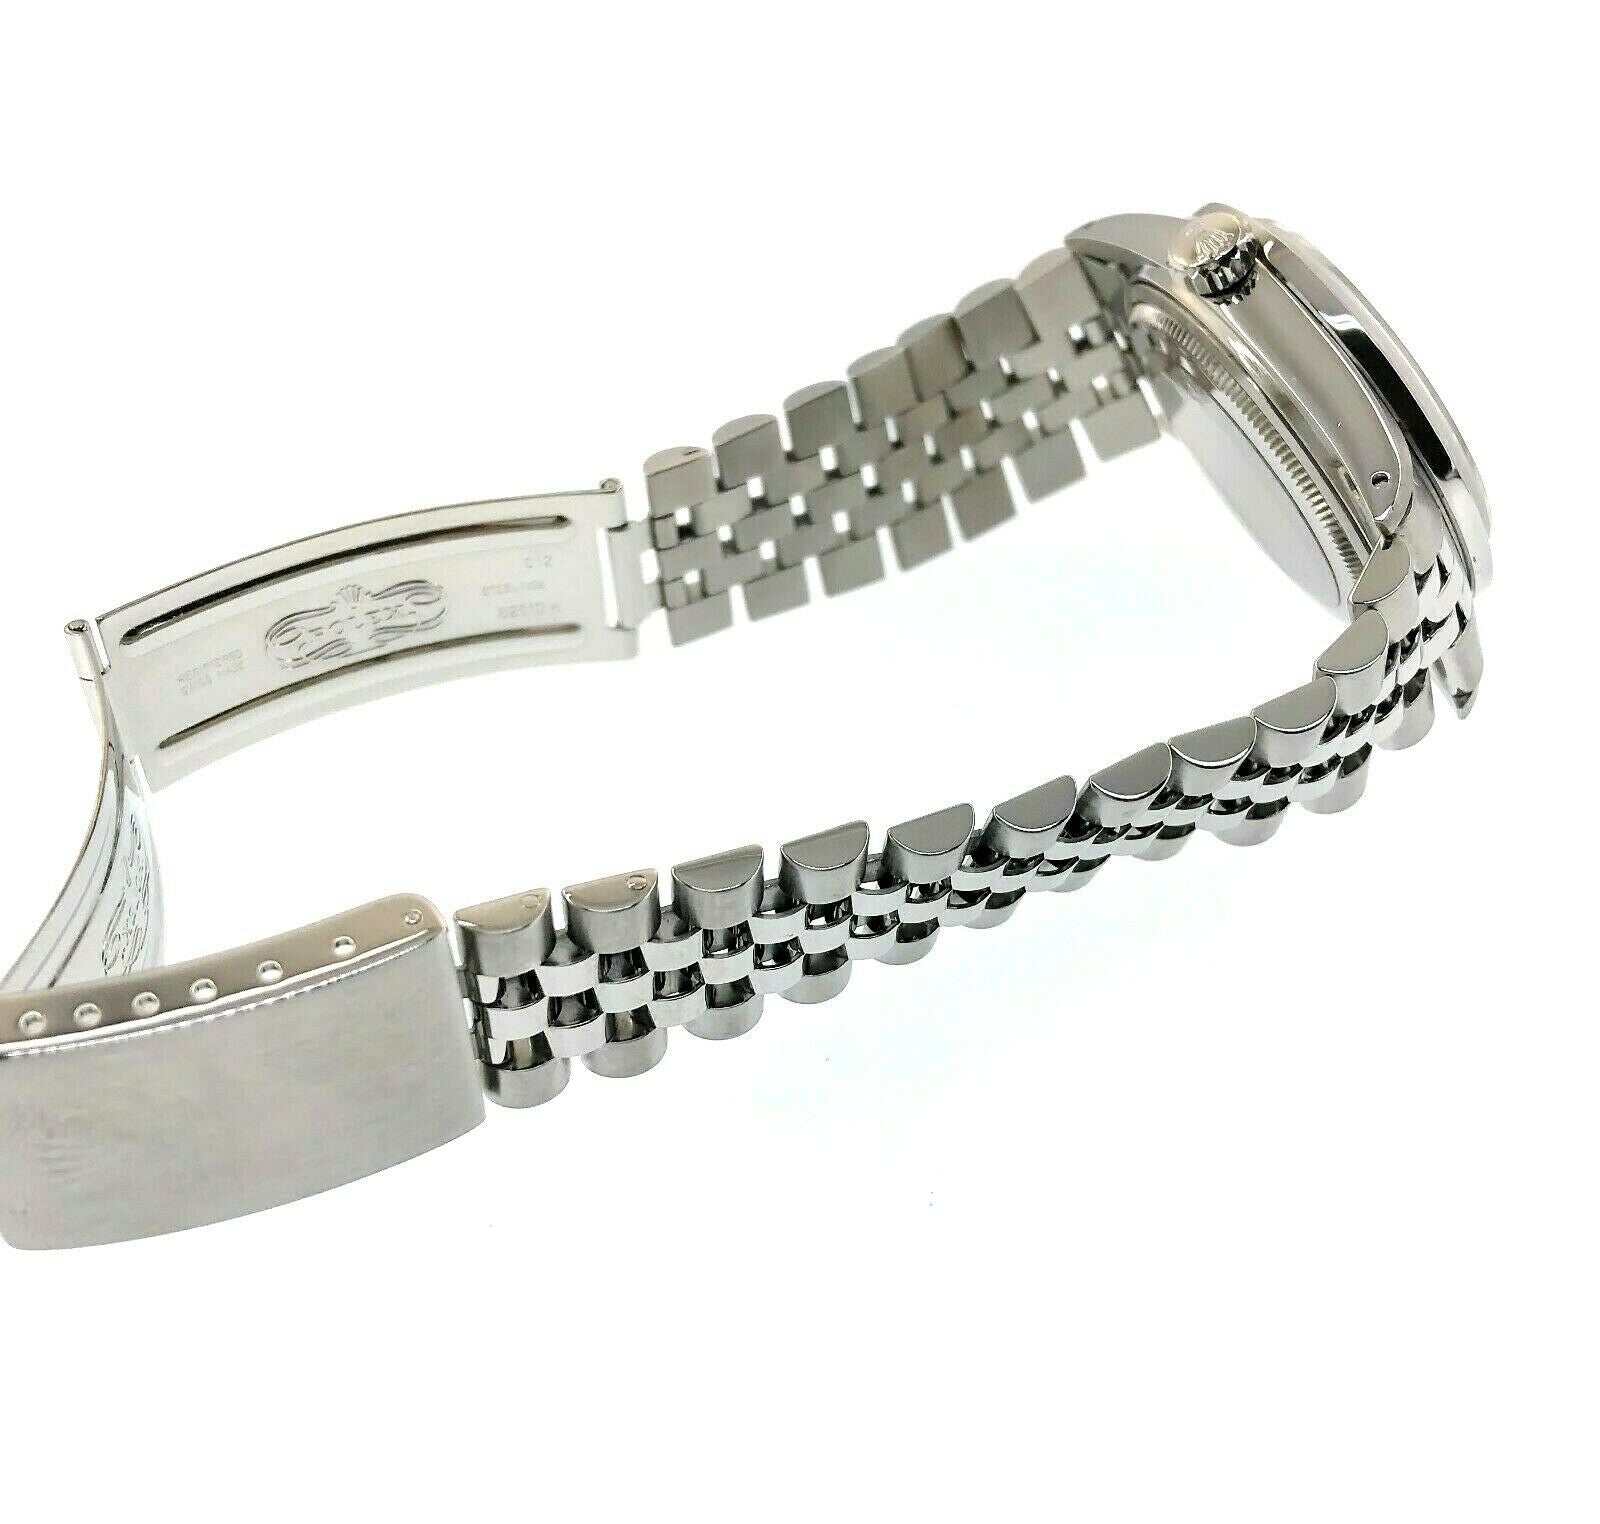 Rolex 36MM Datejust Diamond Vignette Dial & Bezel Jubilee Band Steel Watch 16030